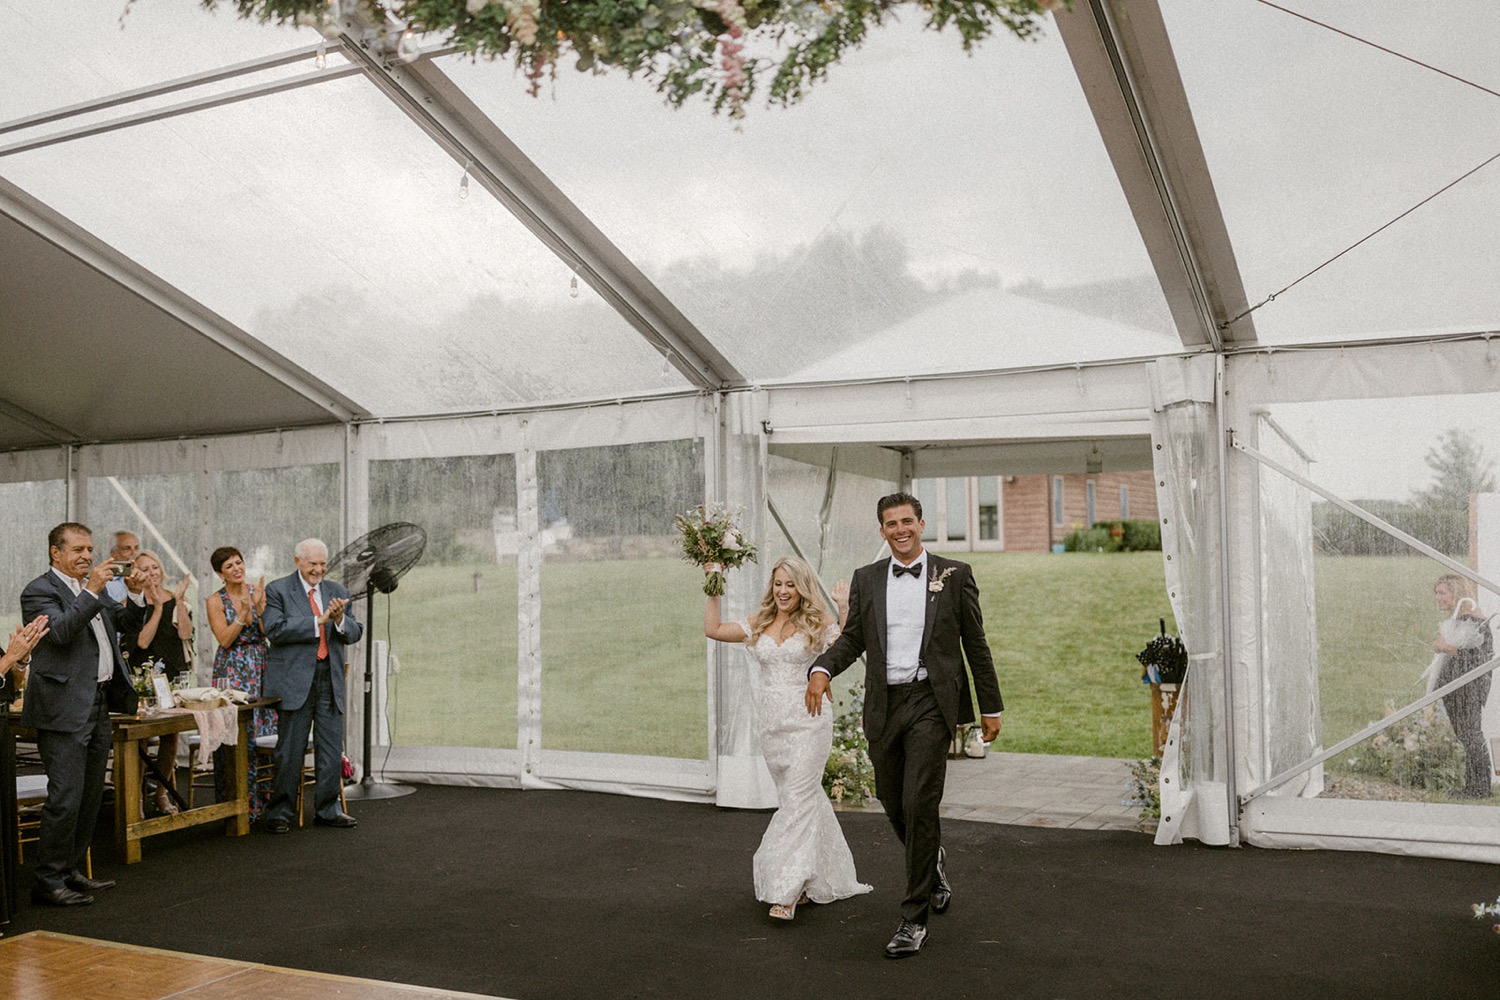 bride and groom entering tent wedding reception